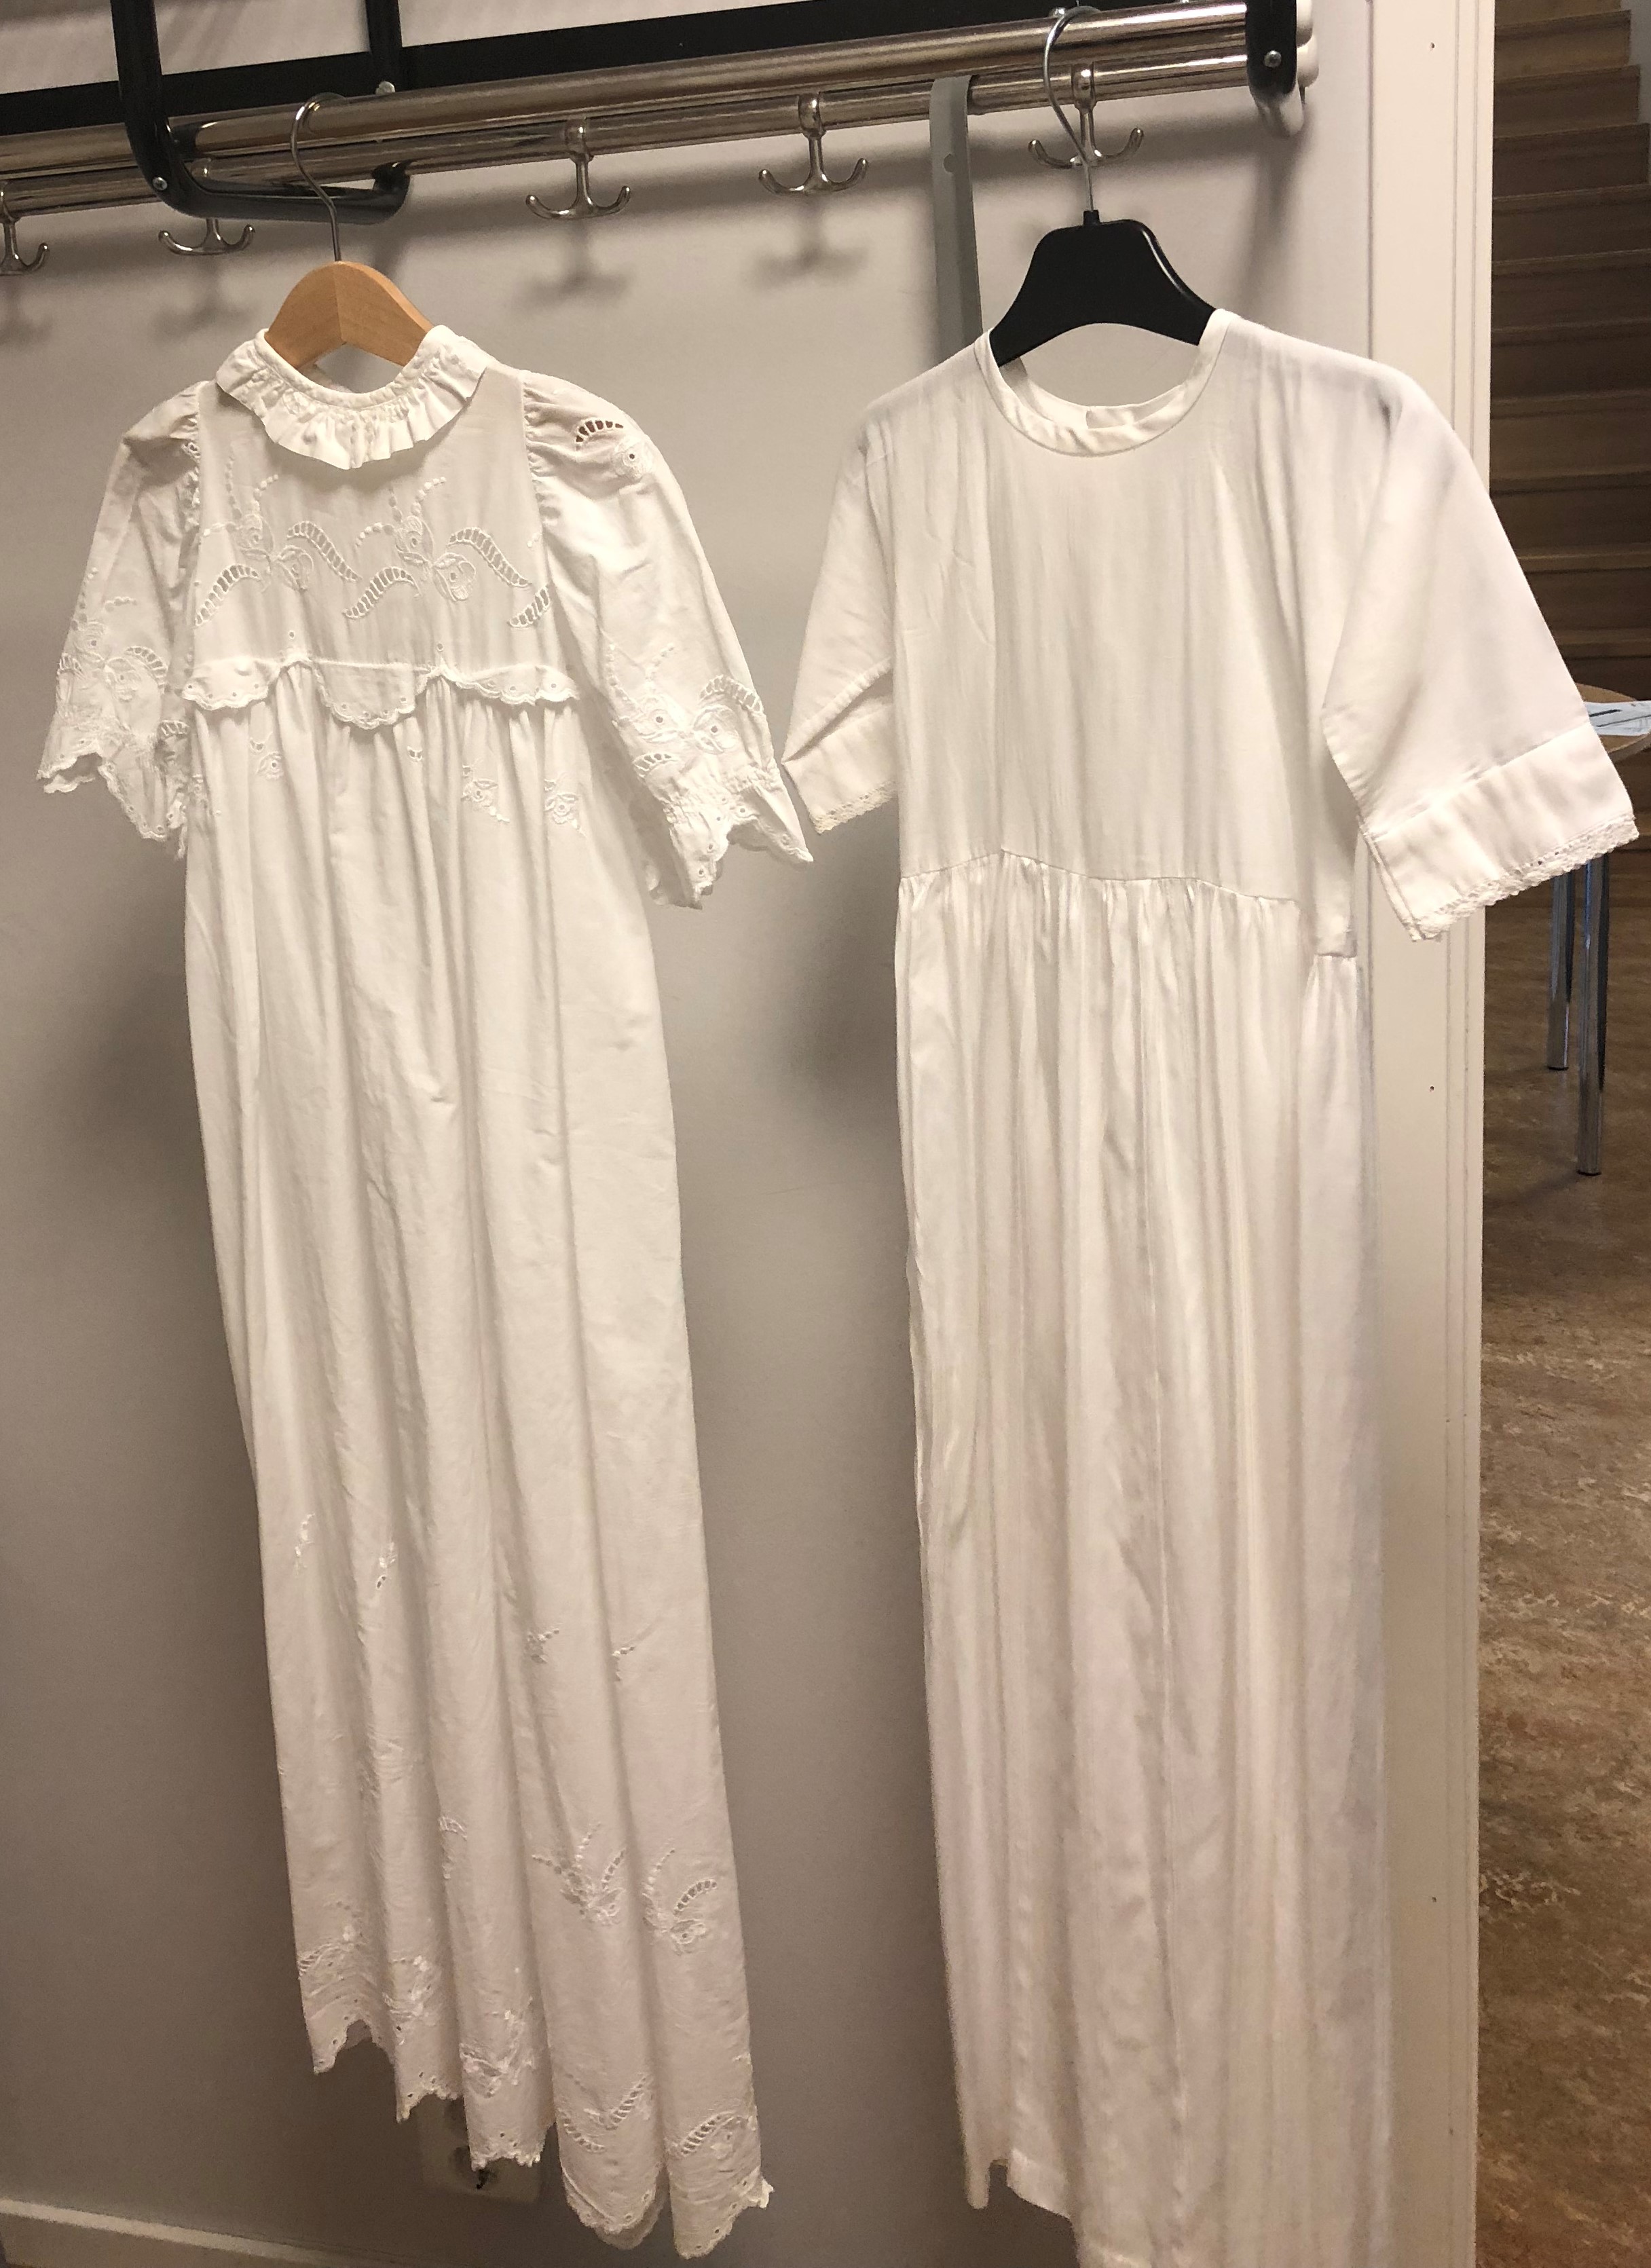 Älmhults församlings dopklänningar